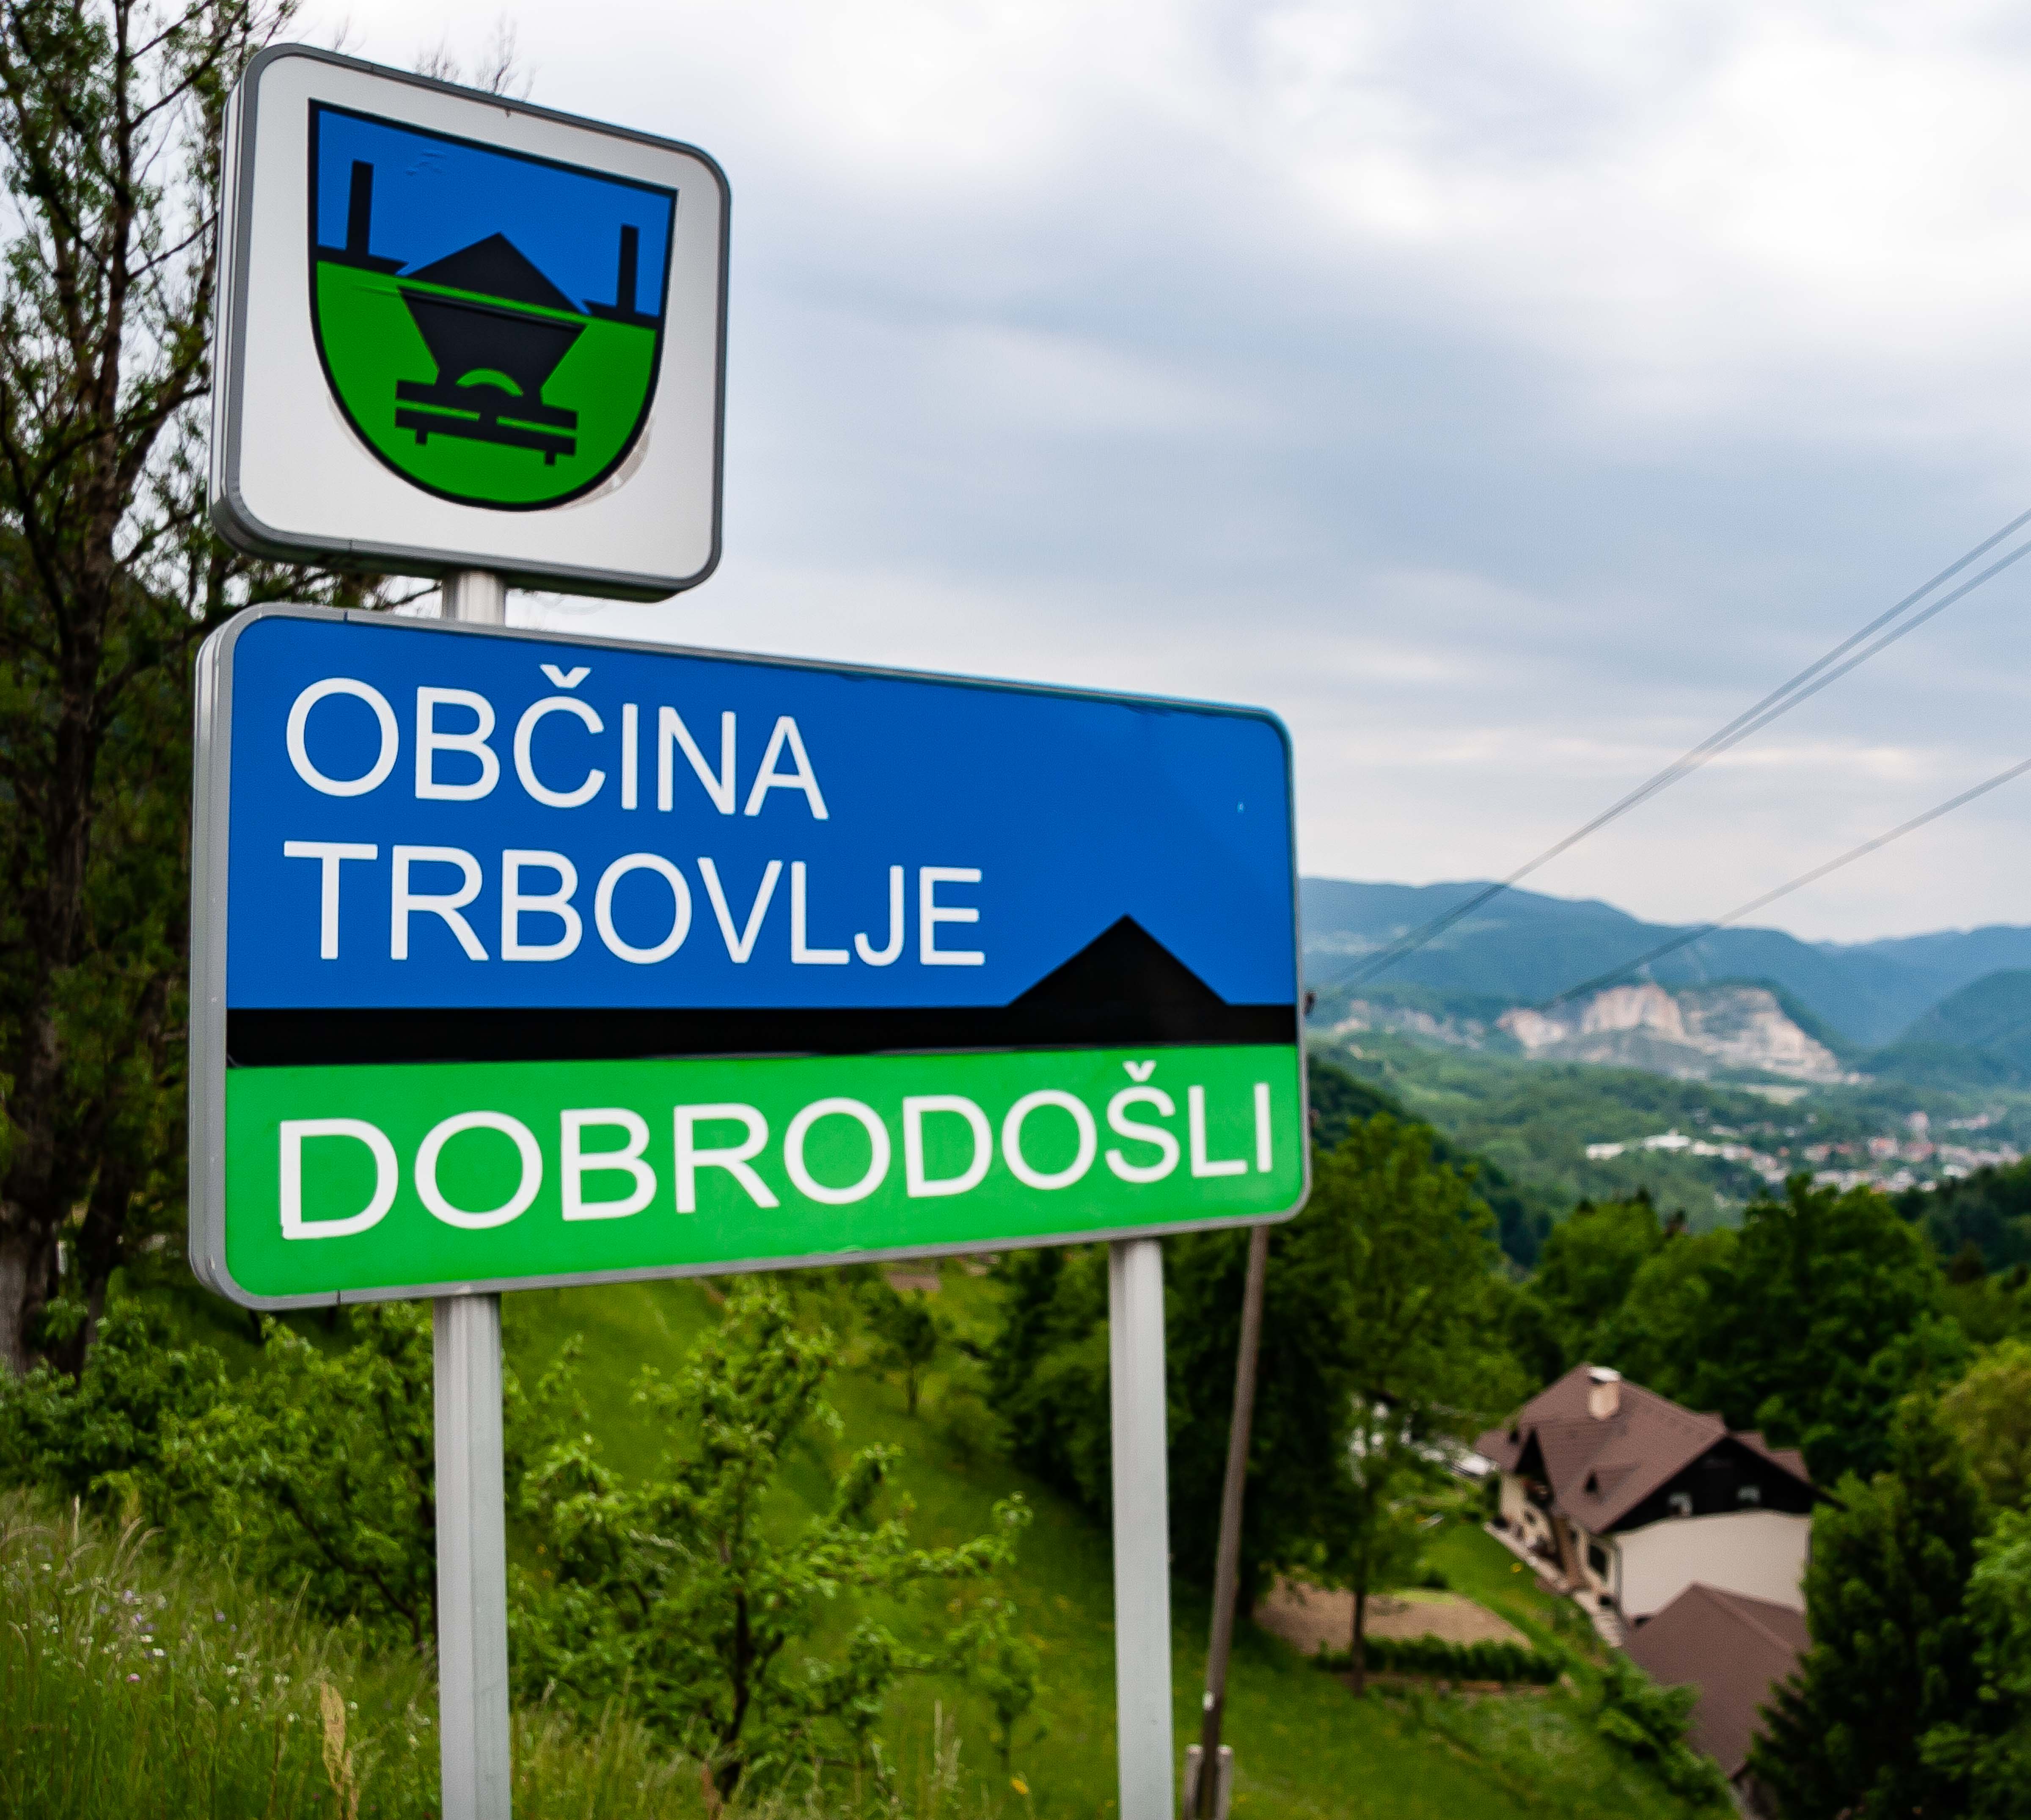 Slovenia, Trbovlje Prov, Dobrodosli Trbovlje Obcina, 2006, IMG 7728